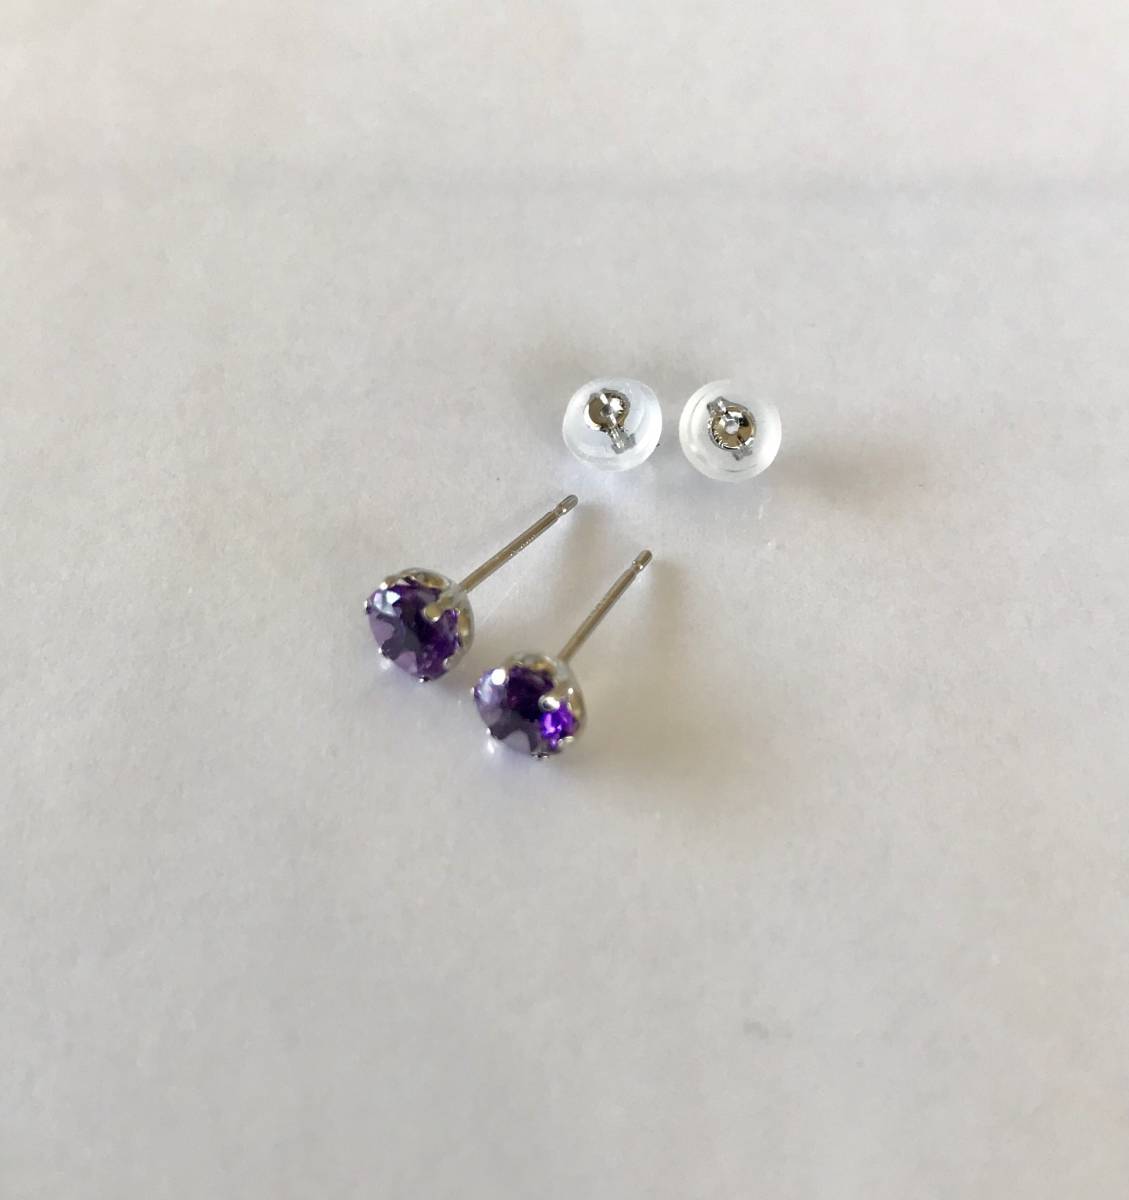  amethyst earrings platinum earrings amethyst 2 month birthstone large grain earrings free shipping unused 